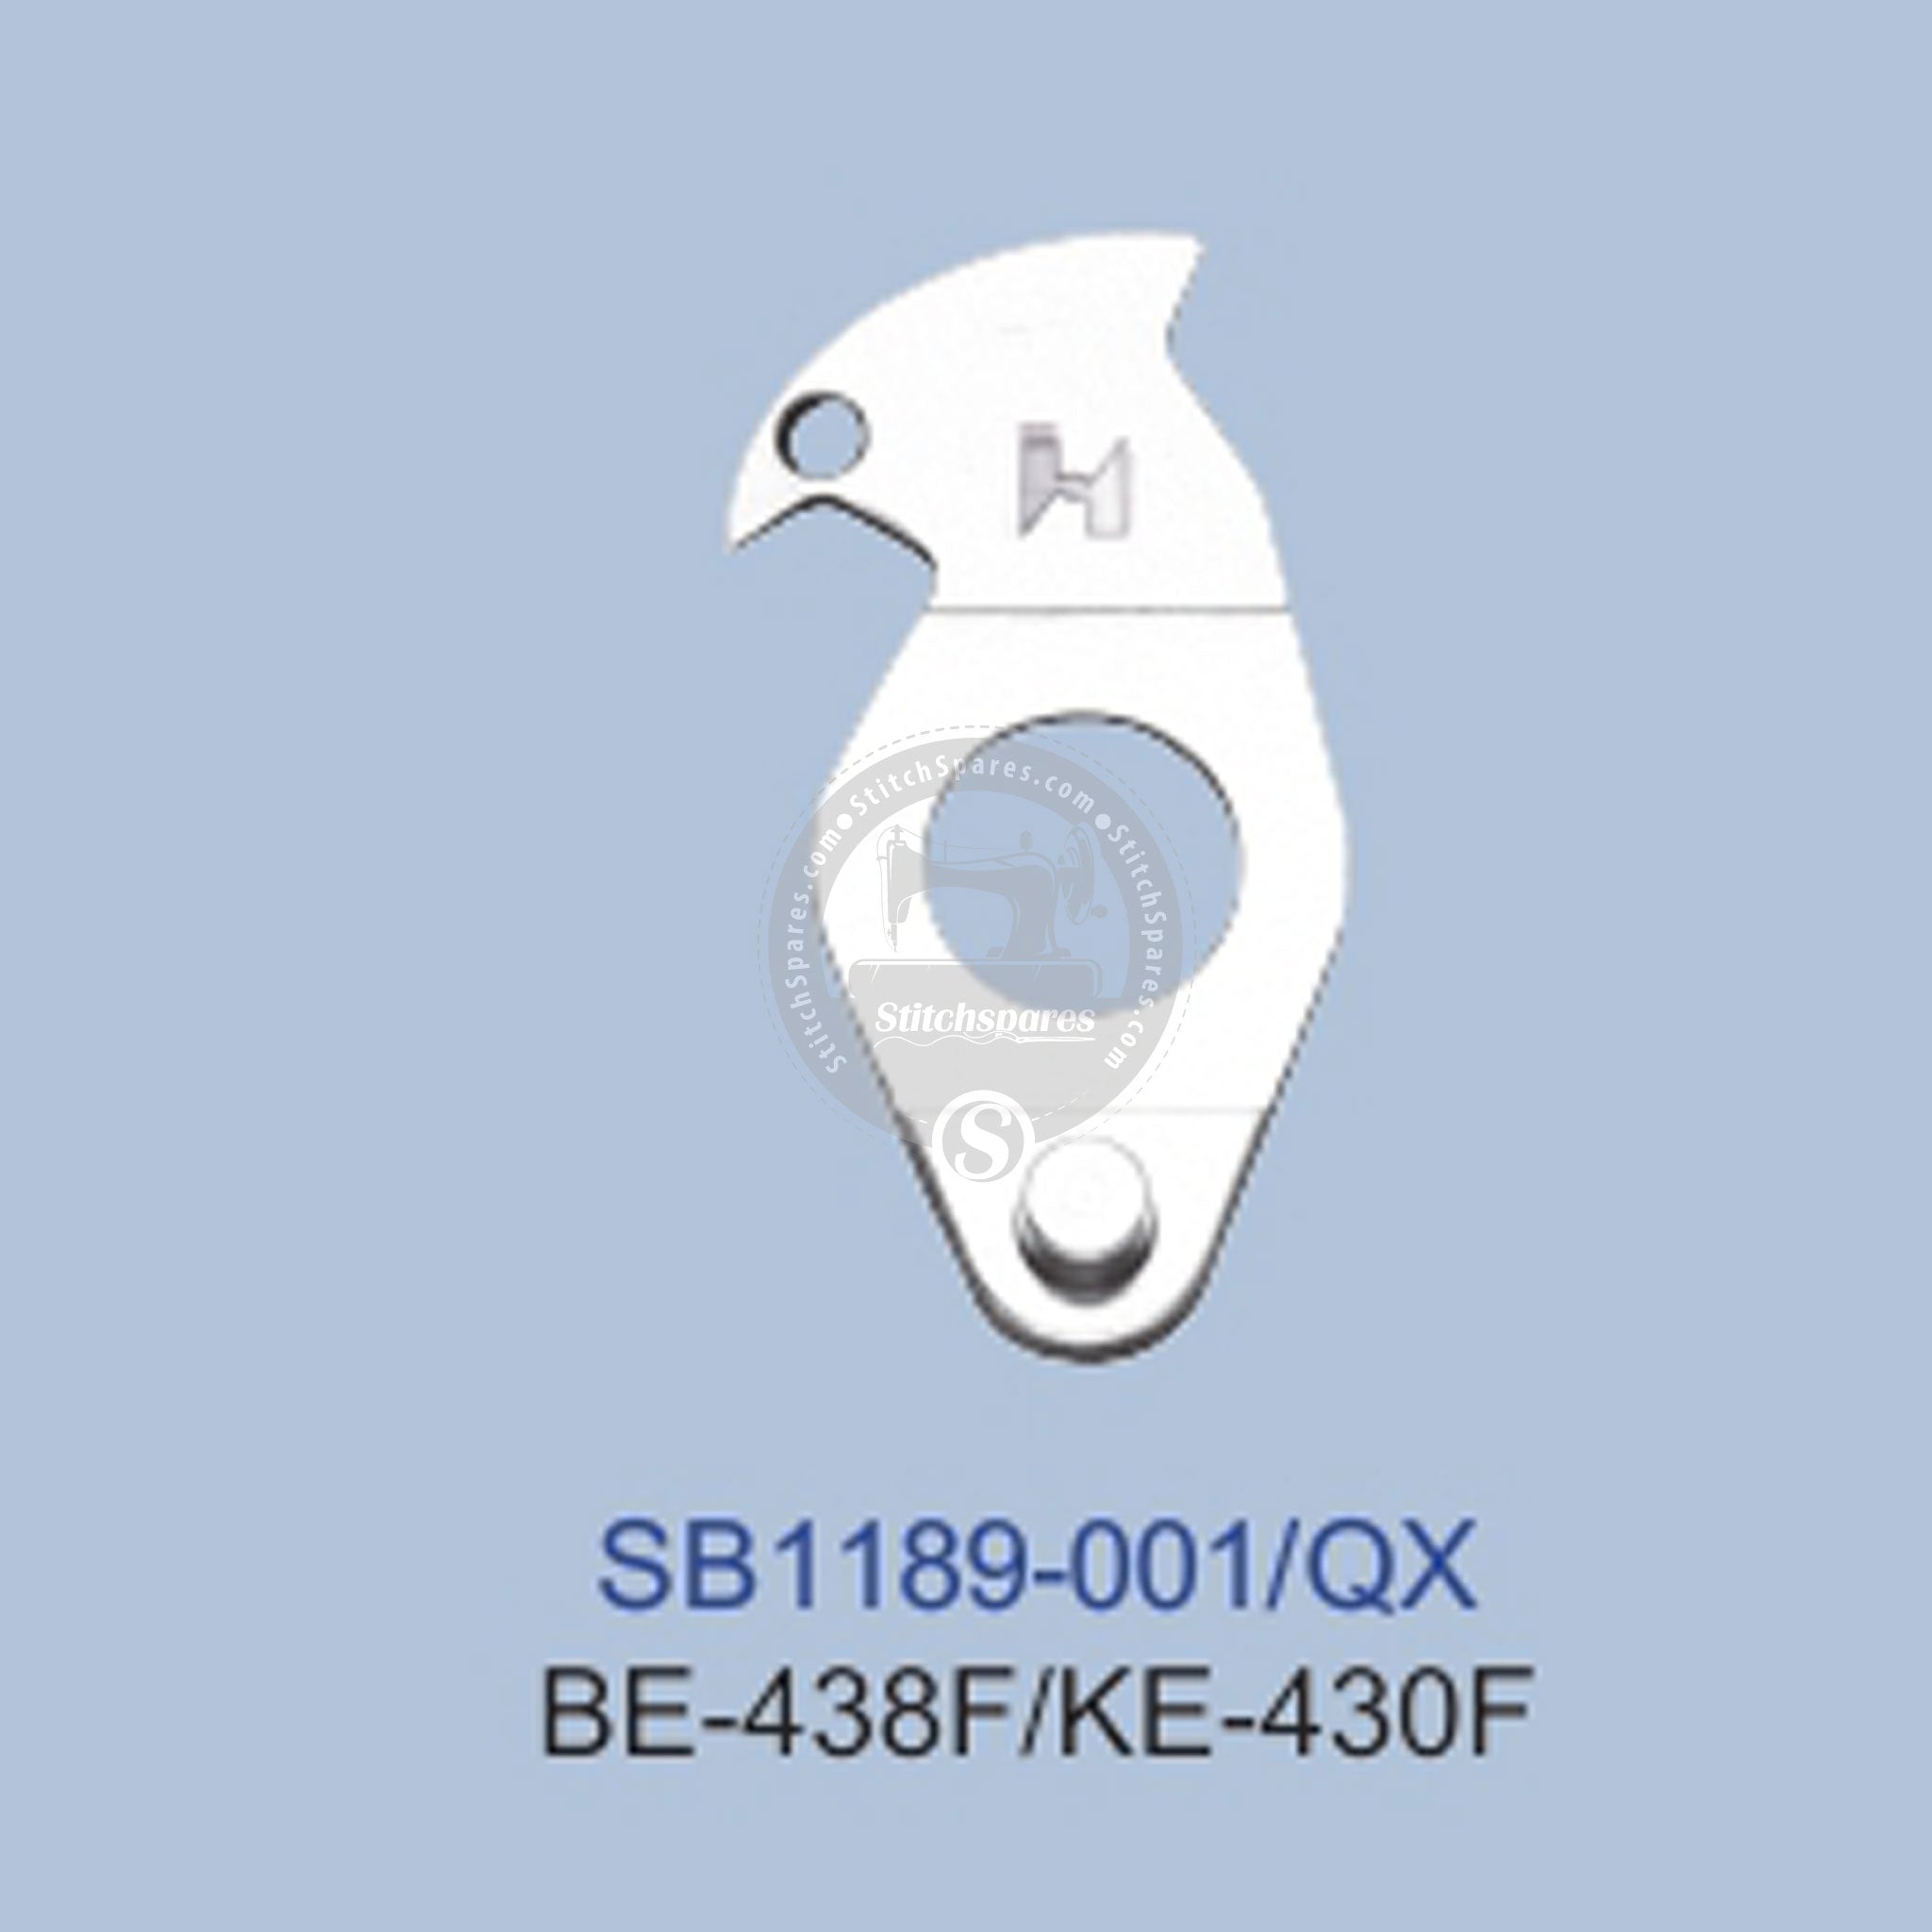 मजबूत SB1189-001 भाई BE-438F / KE-430F BARTACKIG MACHINENSPARE पार्ट